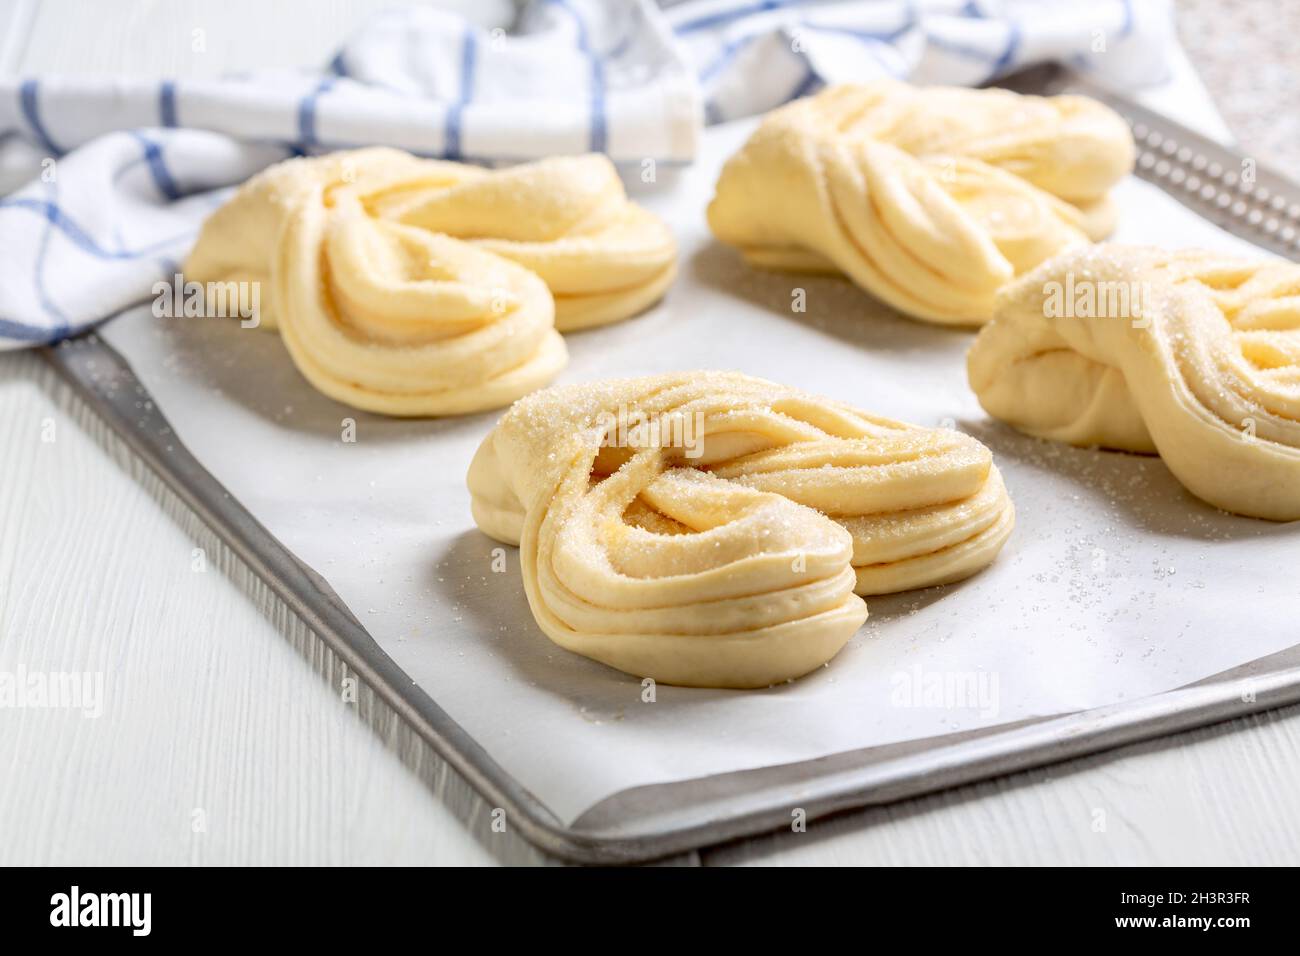 Process of making swirling buns. Stock Photo